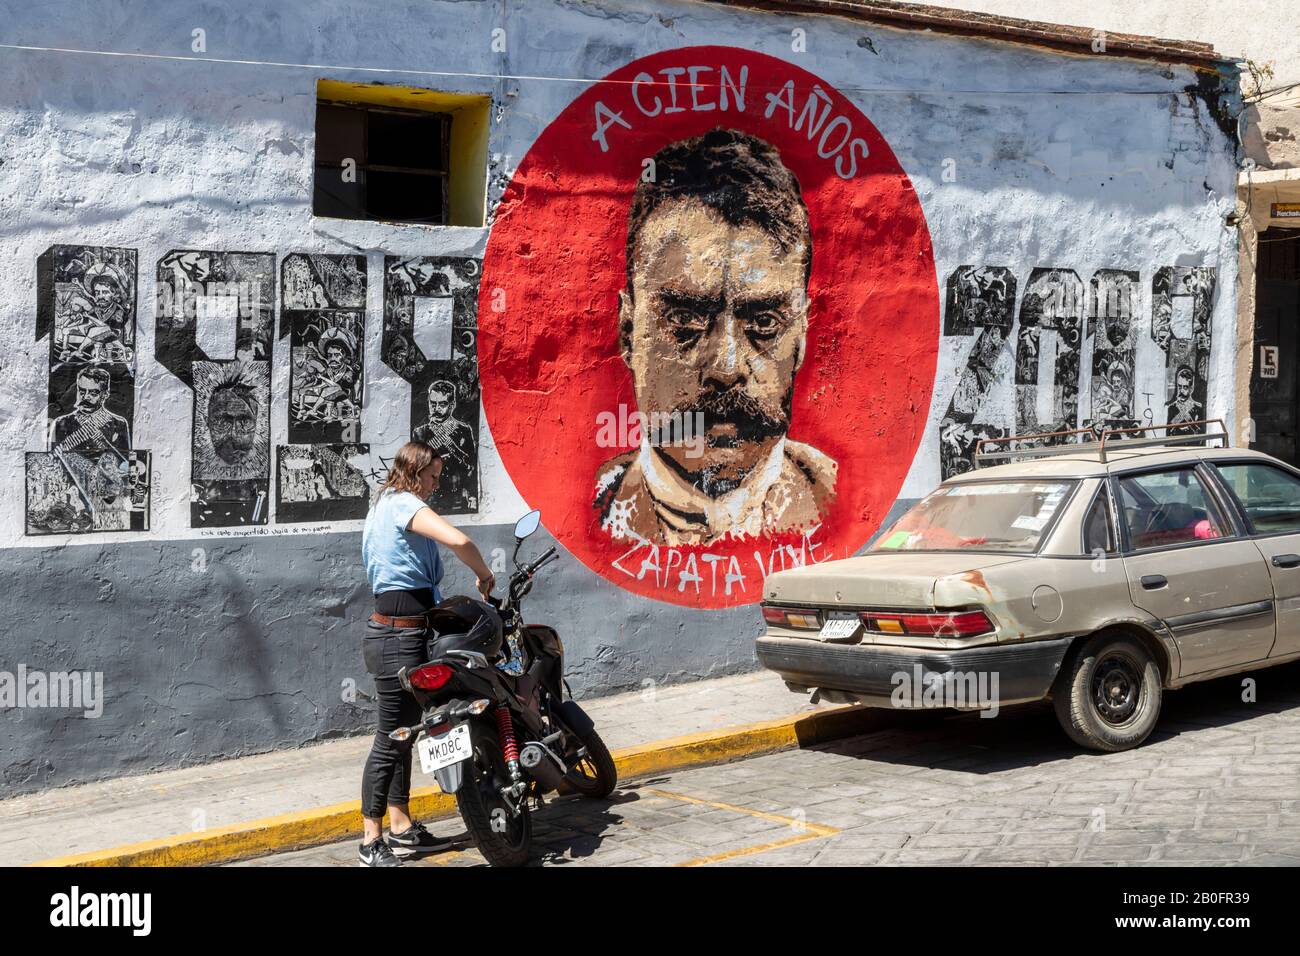 Oaxaca, Mexique - une peinture murale rend hommage à Emiliano Zapata, le révolutionnaire mexicain, 100 ans après sa mort. Banque D'Images